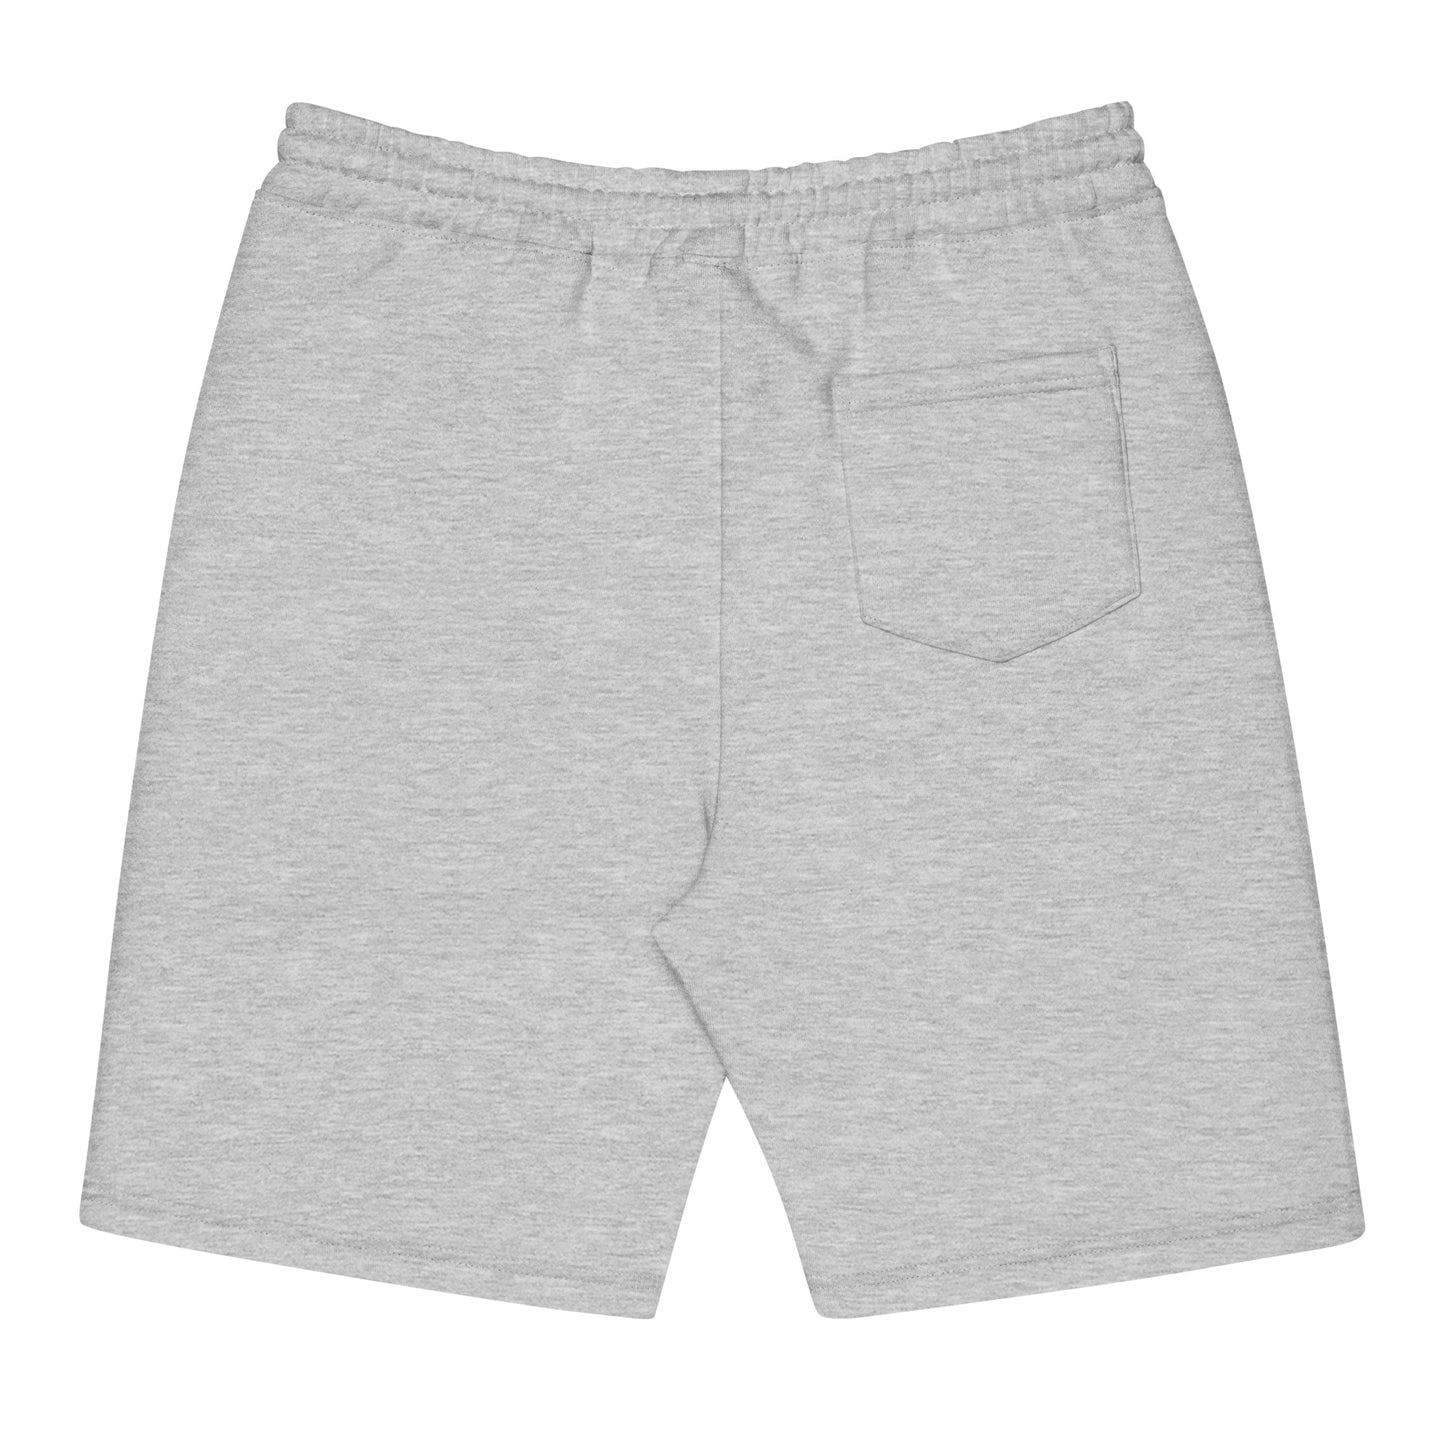 Grand Canyon fleece shorts